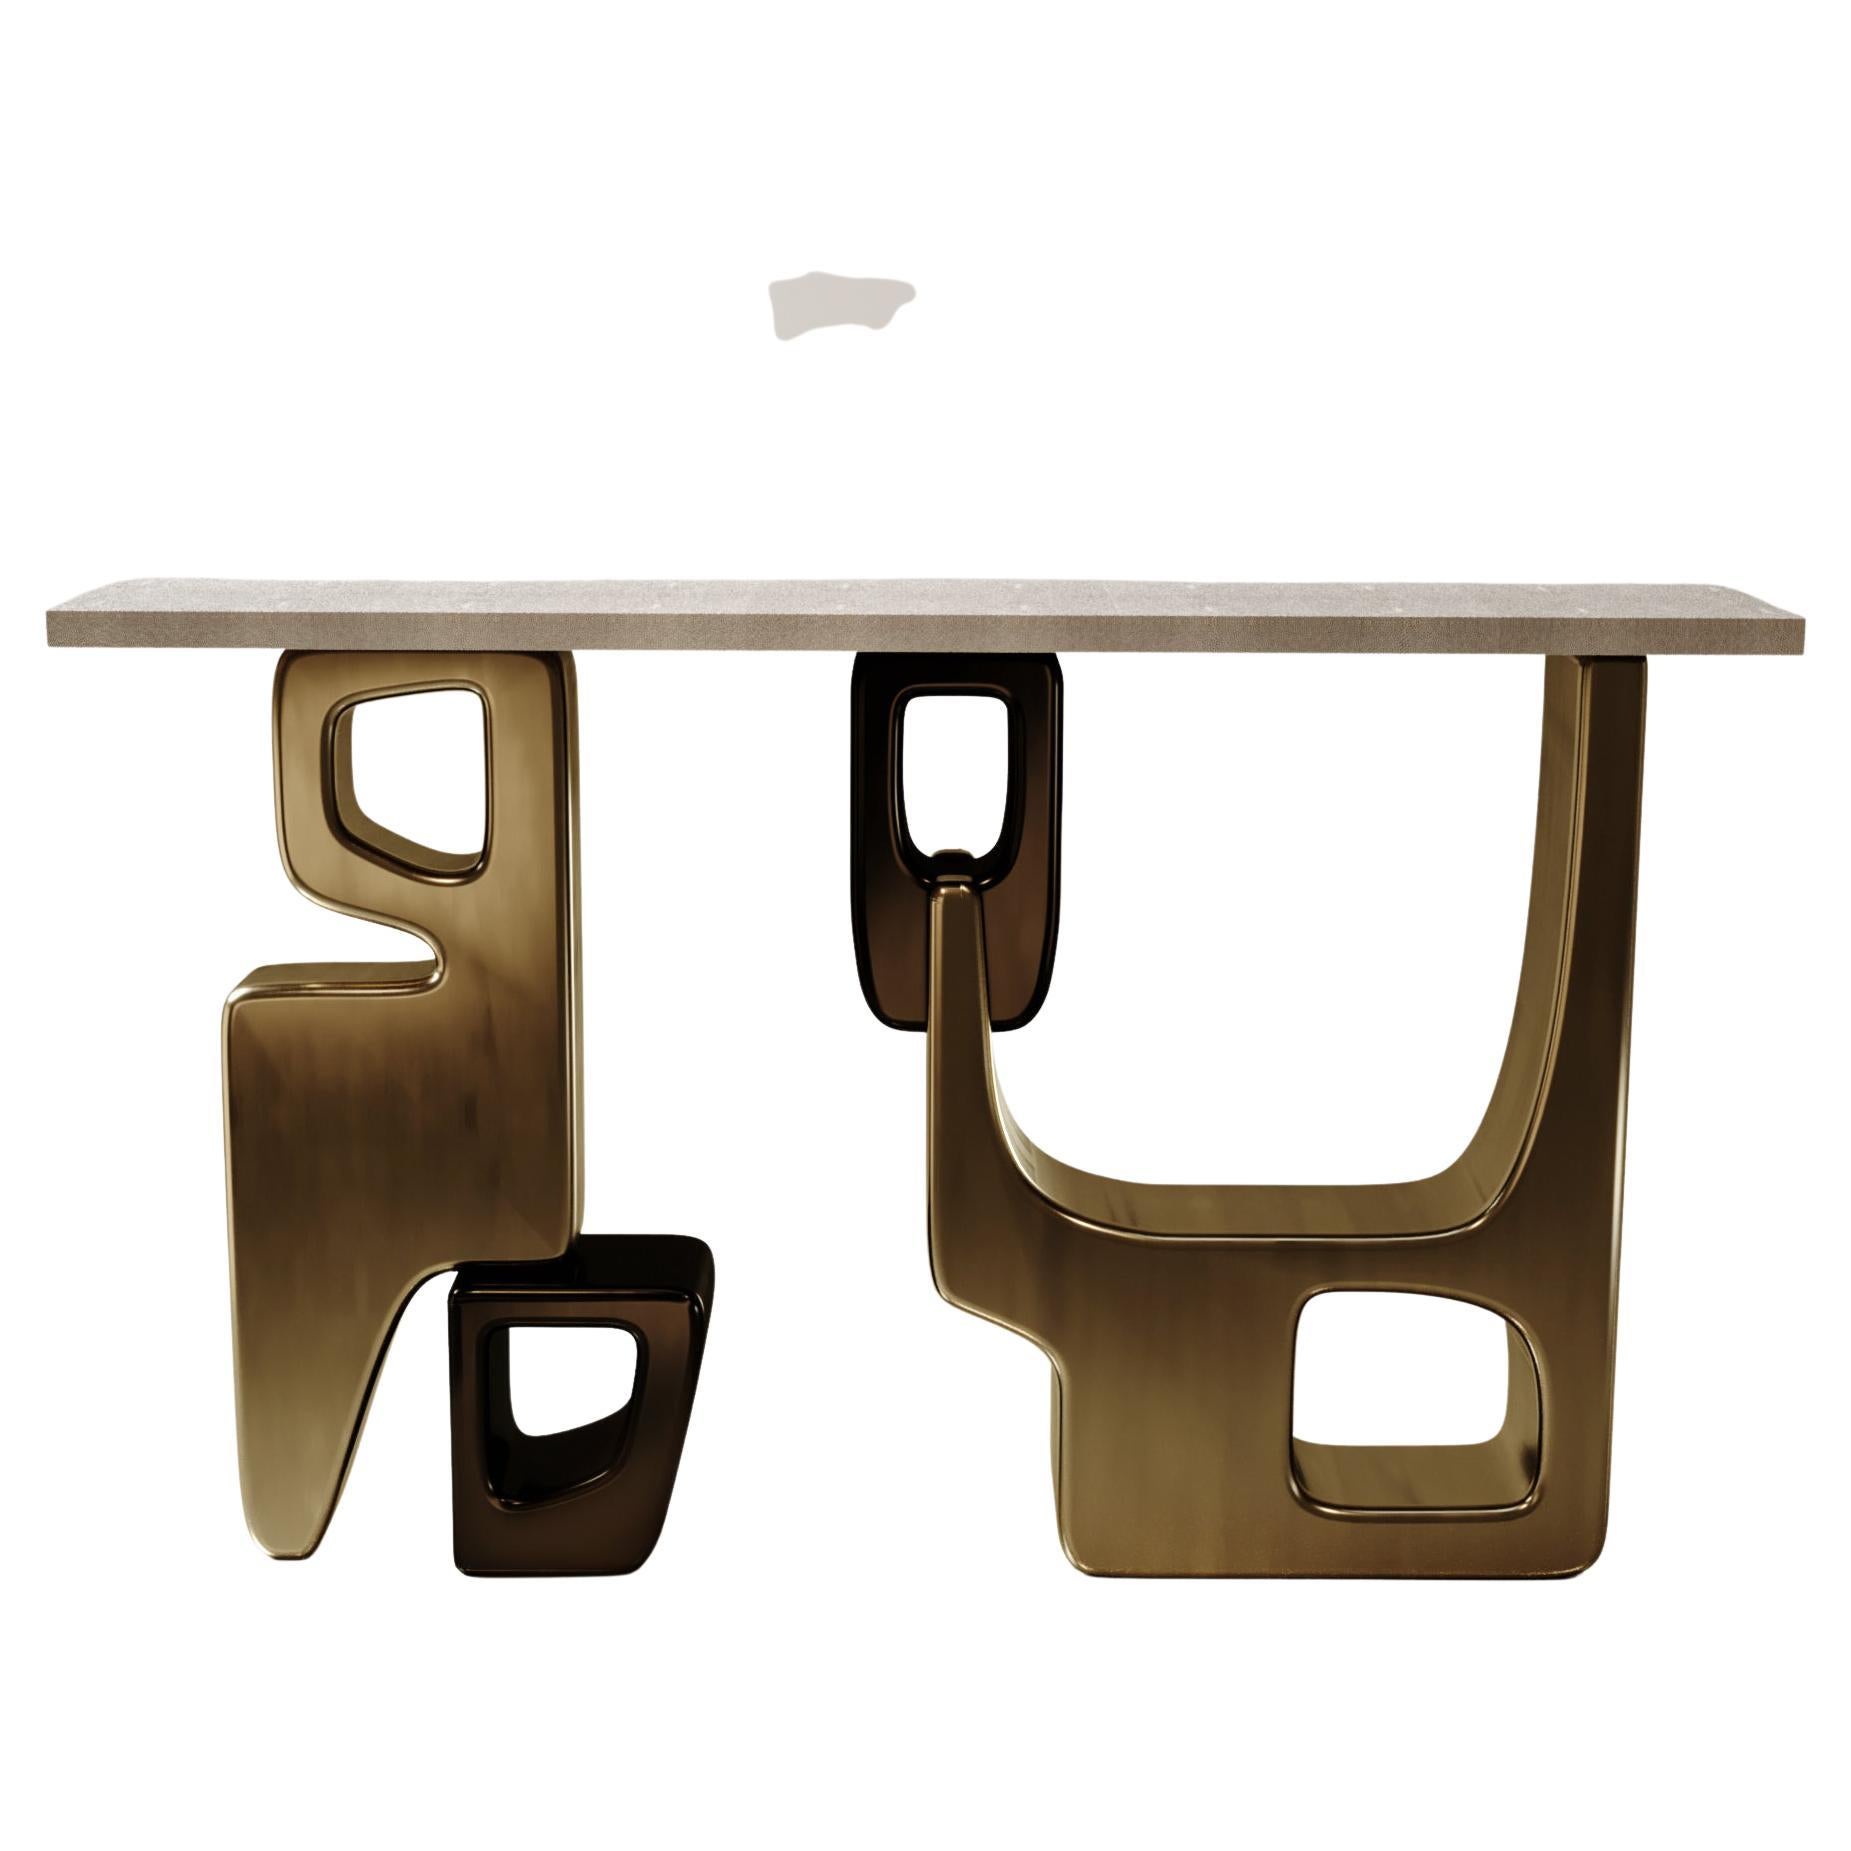 La table console Apoli de Kifu Paris est à la fois spectaculaire et organique grâce à son design unique. Le plateau en marqueterie de galuchat crème repose sur une base géométrique et sculpturale en laiton bronze-patine. Cette pièce a été conçue par